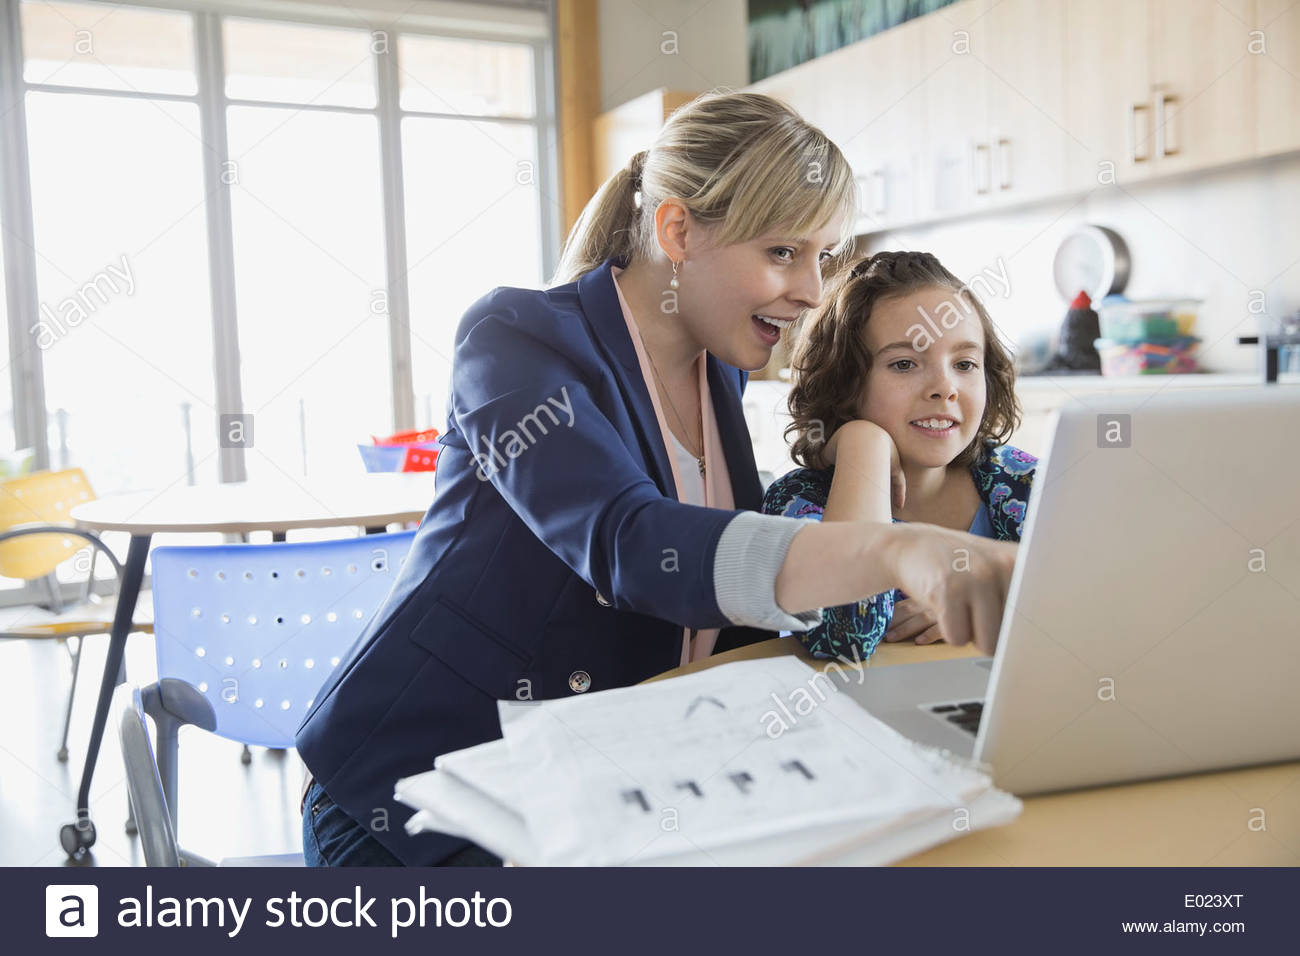 Fille de l'école et l'enseignant using laptop in classroom Banque D'Images